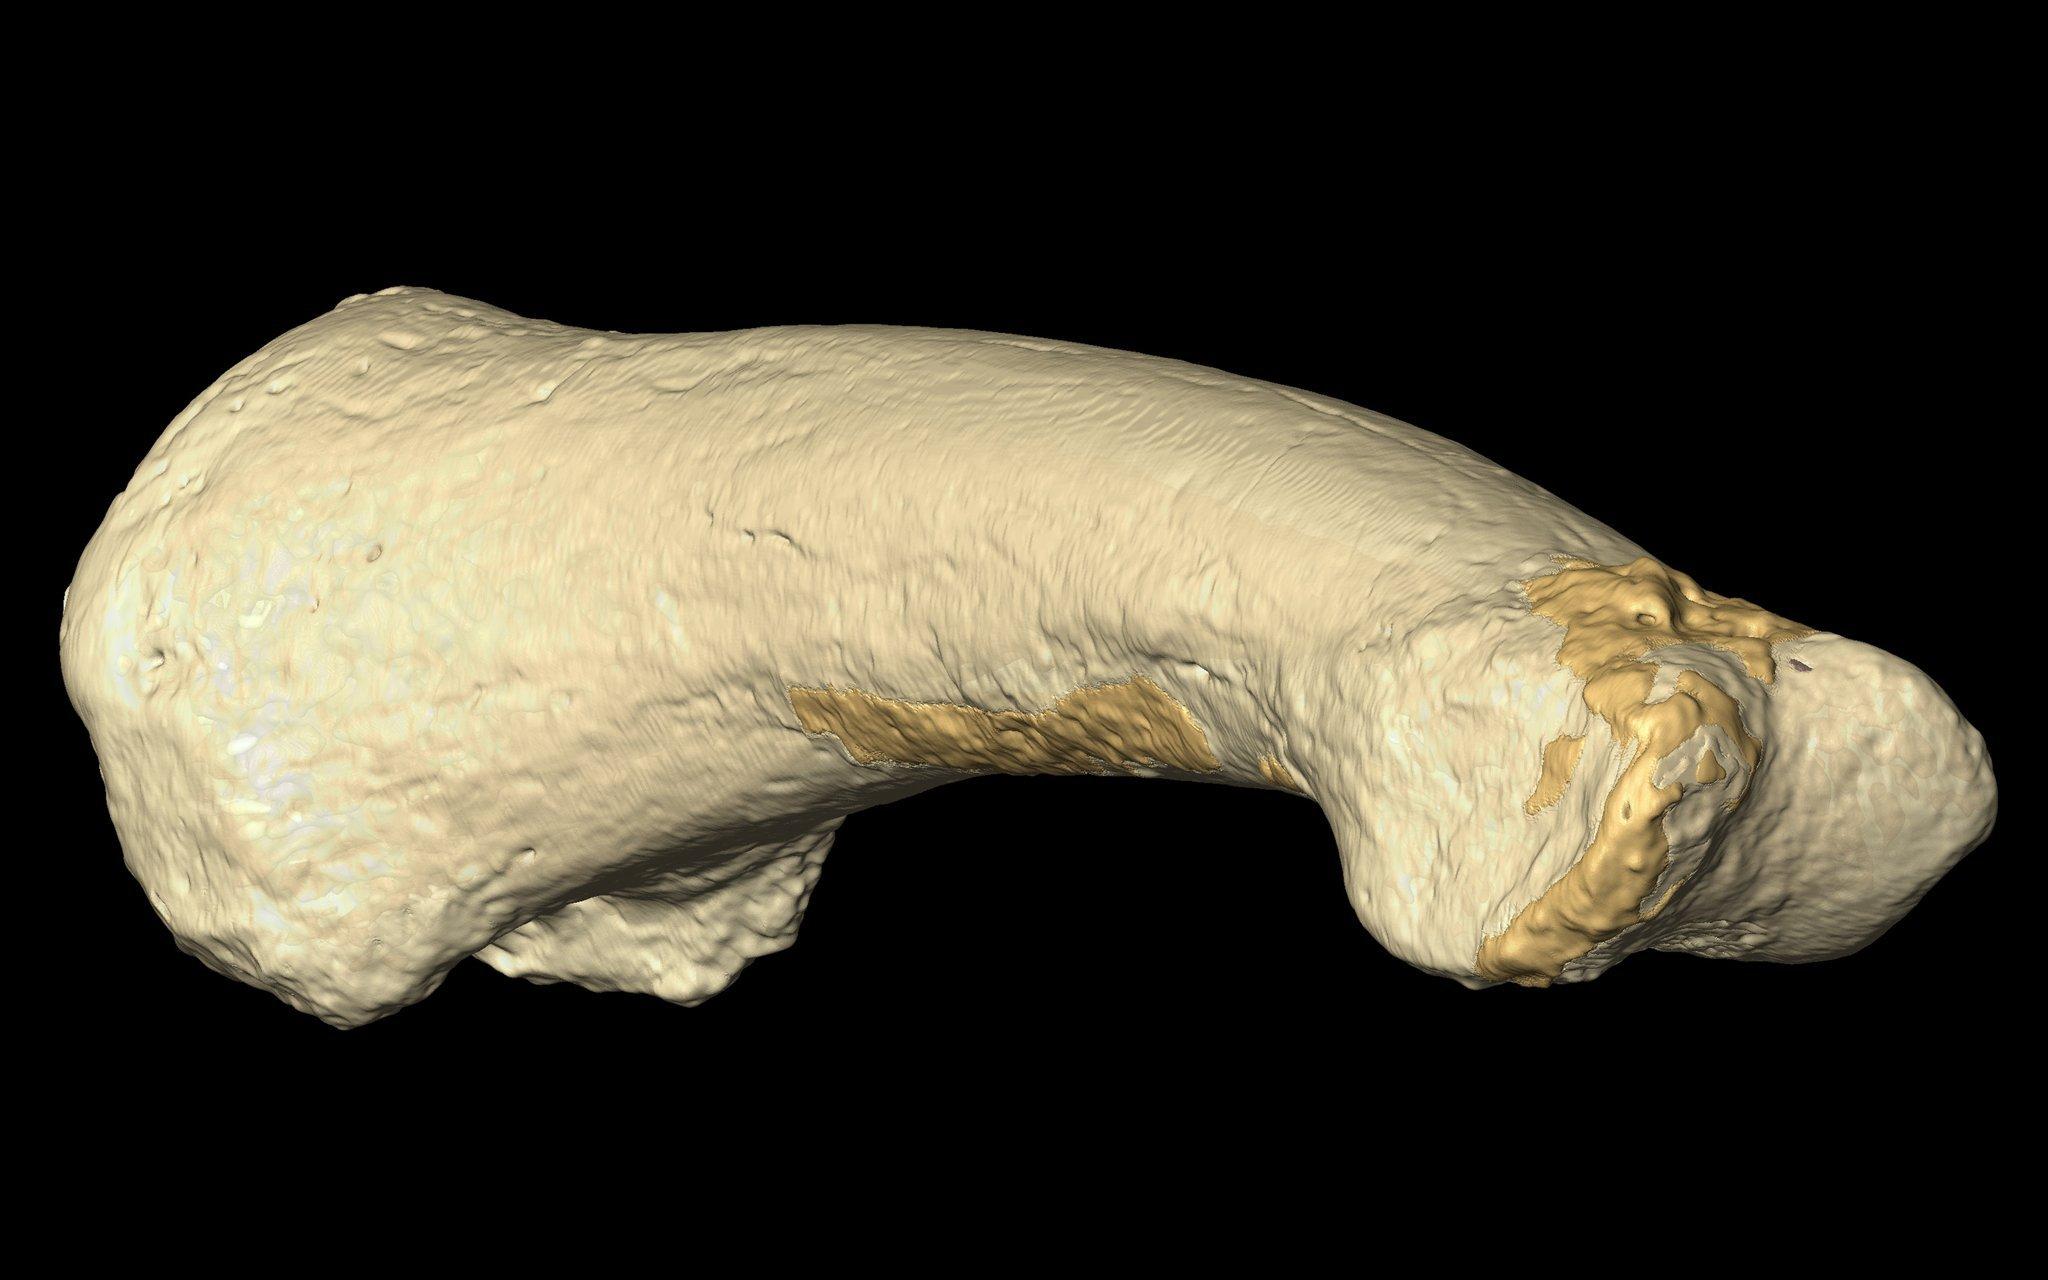 Hier ist eine Nahaufnahme des gekrümmten Fußknochens von Homo luzonensis zu sehen. Der Knochen lässt vermuten, dass die urtümlichen Menschen gut klettern konnten und zeitweilig noch auf Bäumen lebten.